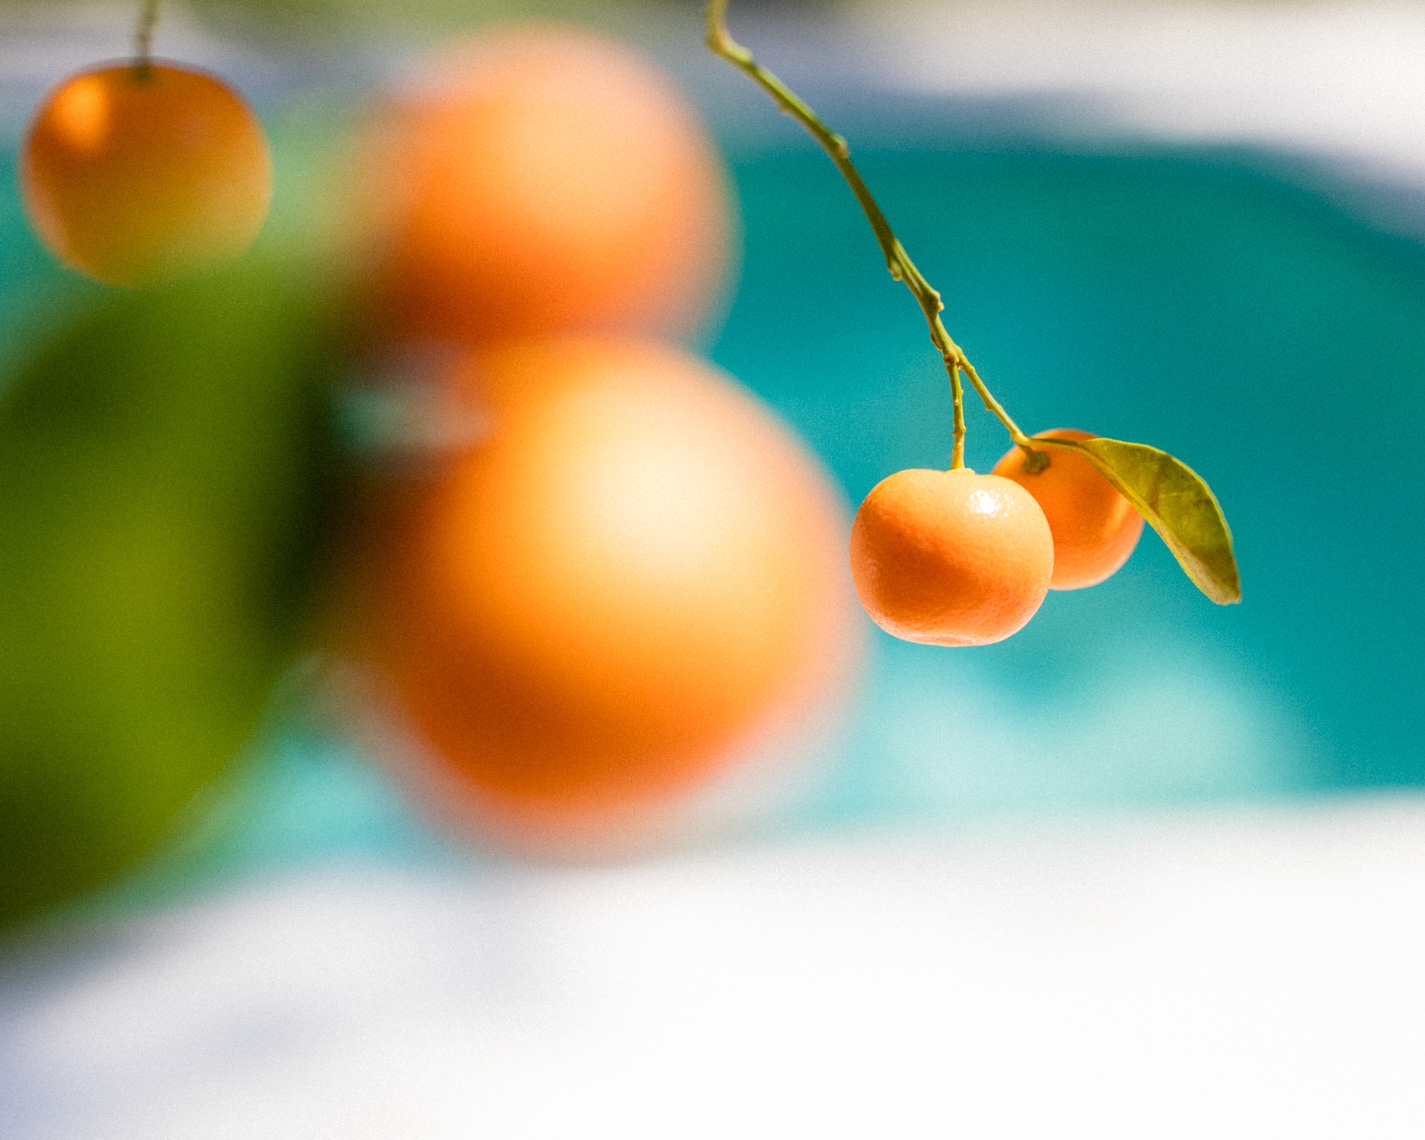 Florida oranges against pool | Editorial Travel Photographer